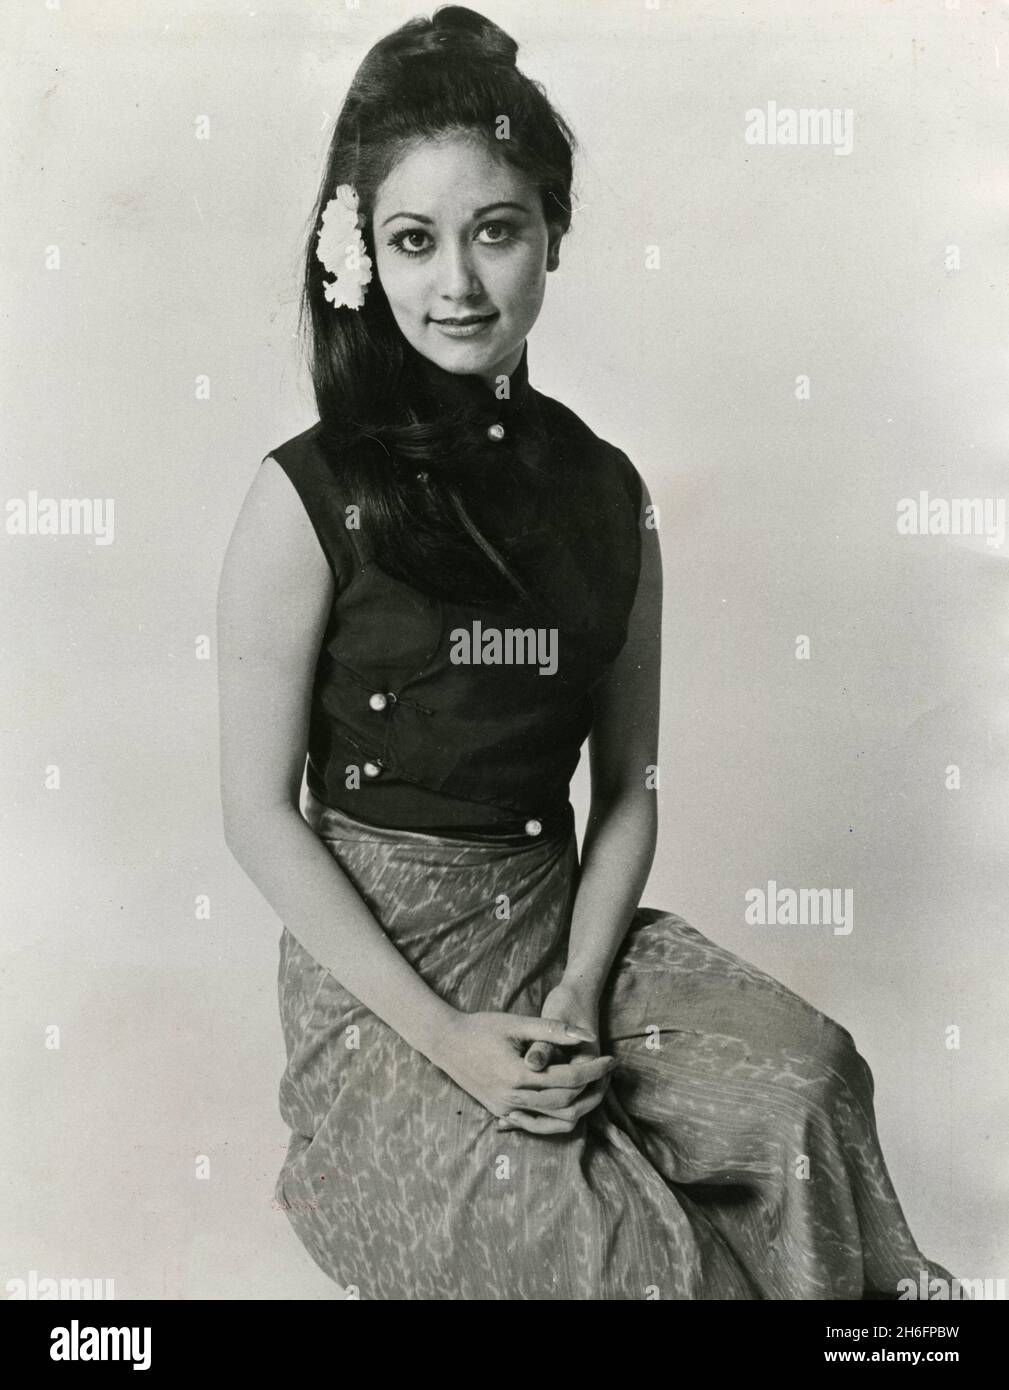 Attrice birmano-britannica e ospite TV Me Me Lai, UK anni '70 Foto Stock